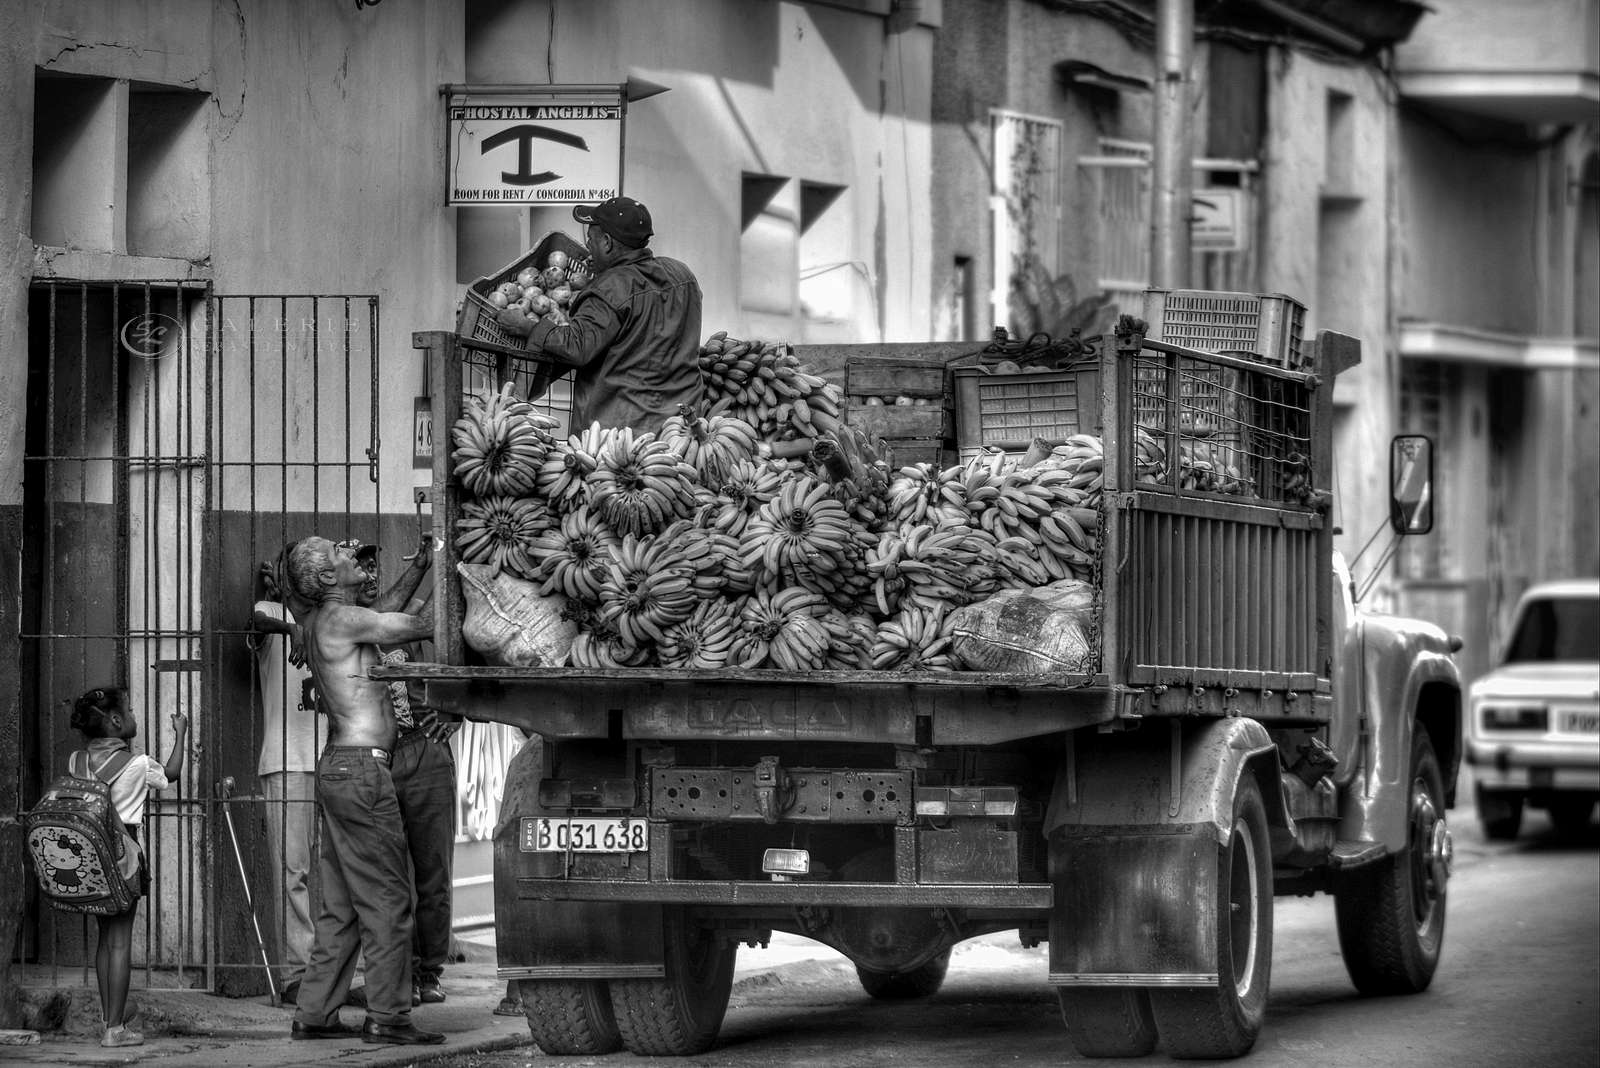 Avoir la banane - Cuba